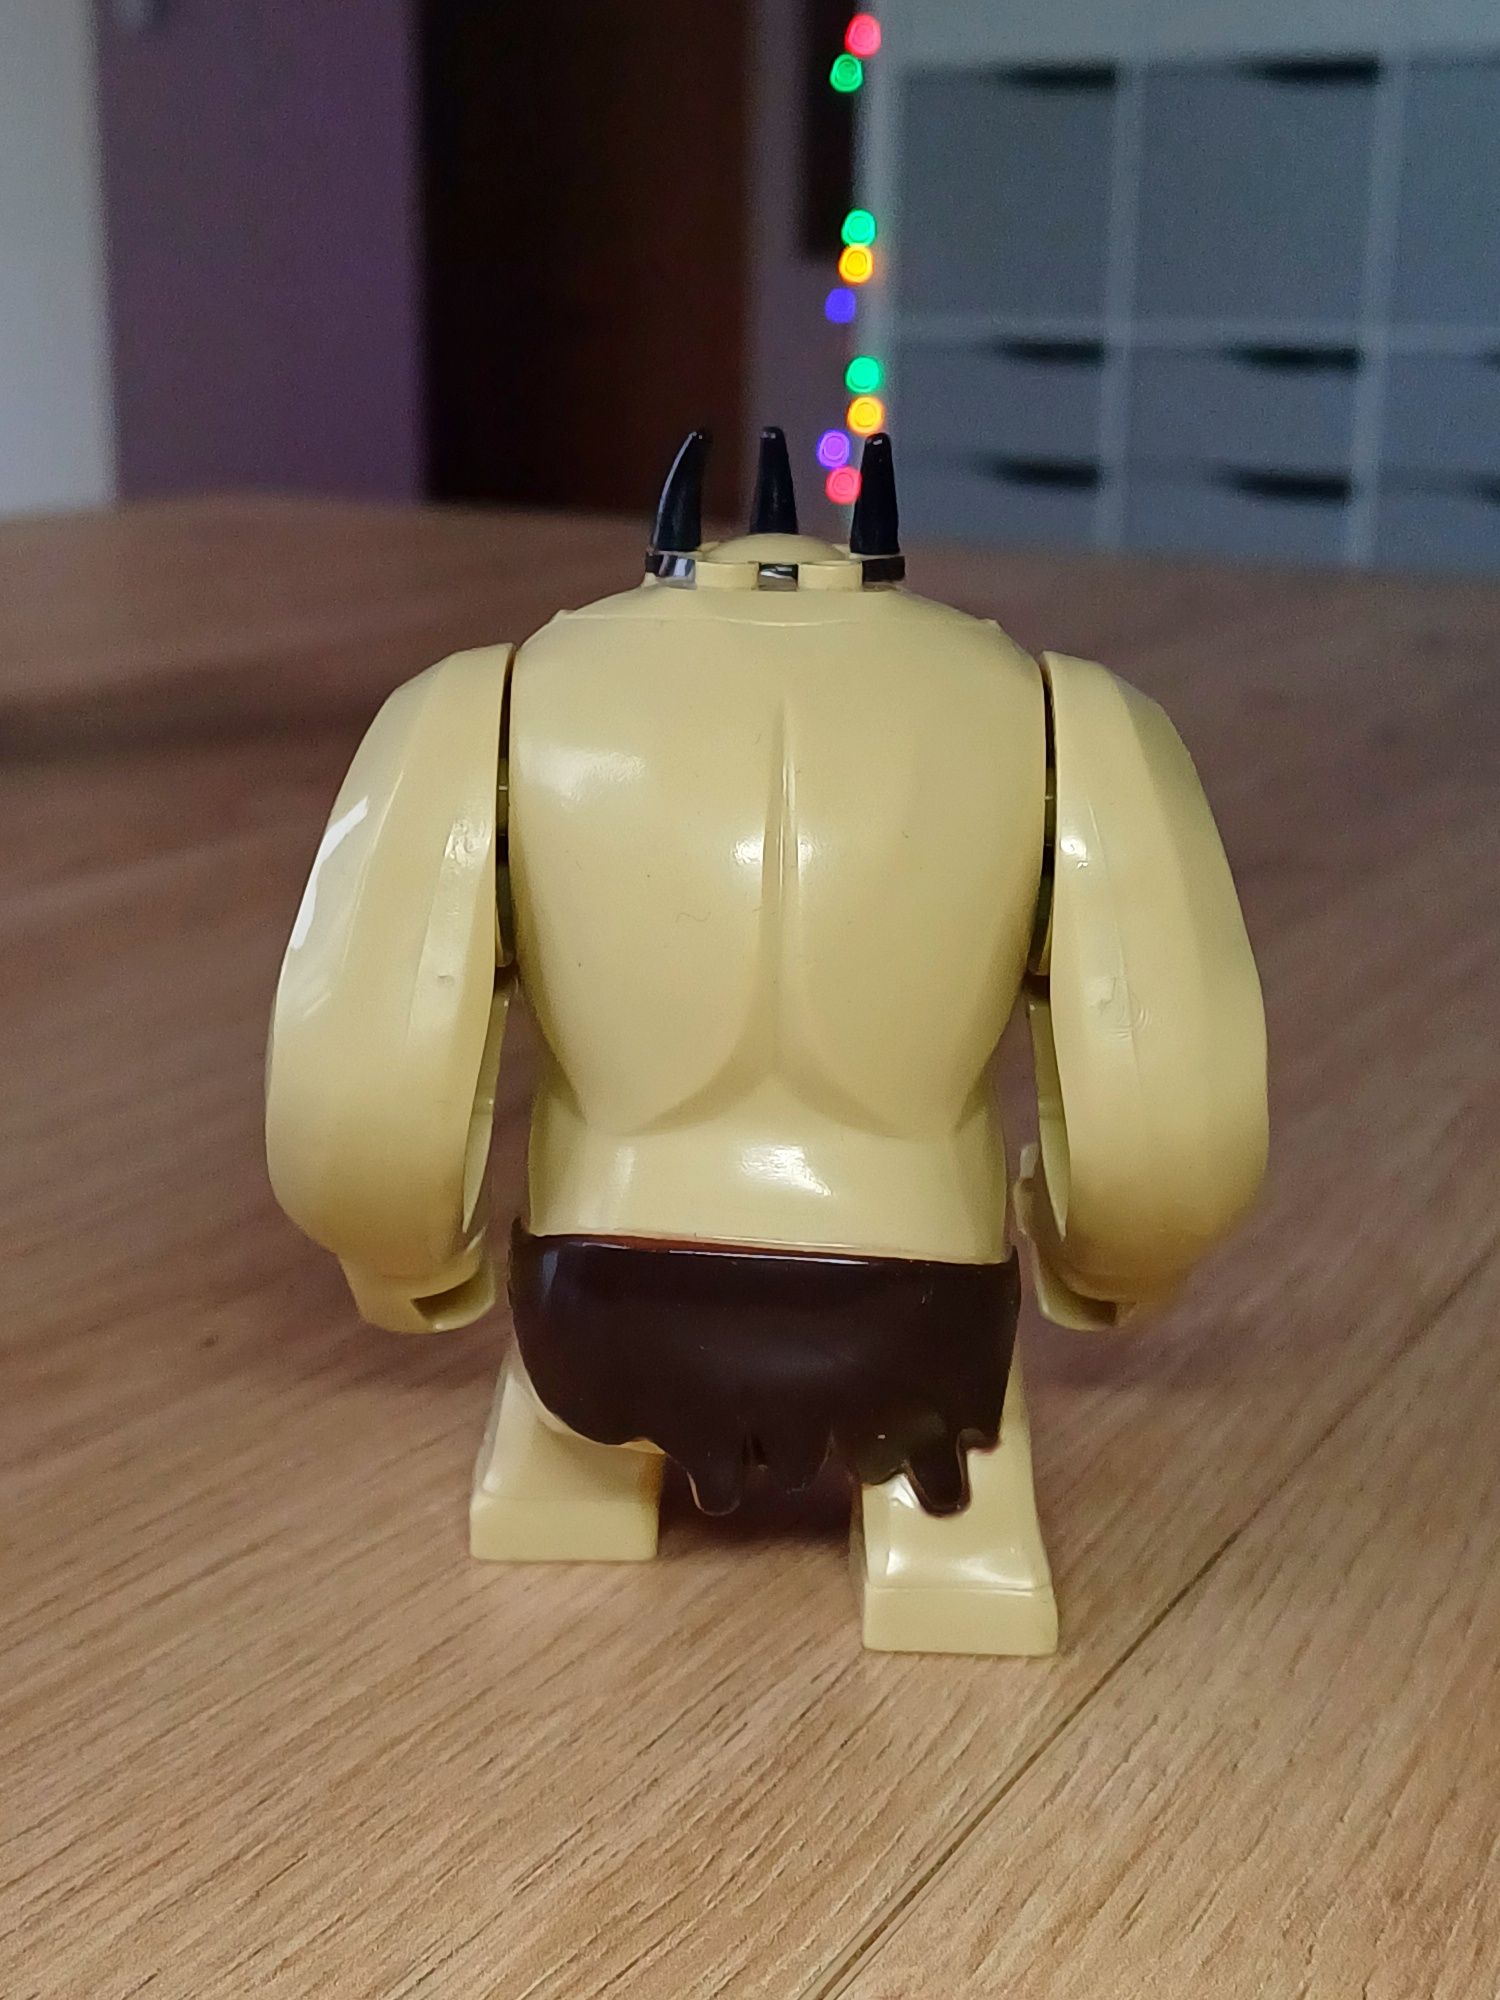 Król orkow kompatybilne z Lego!